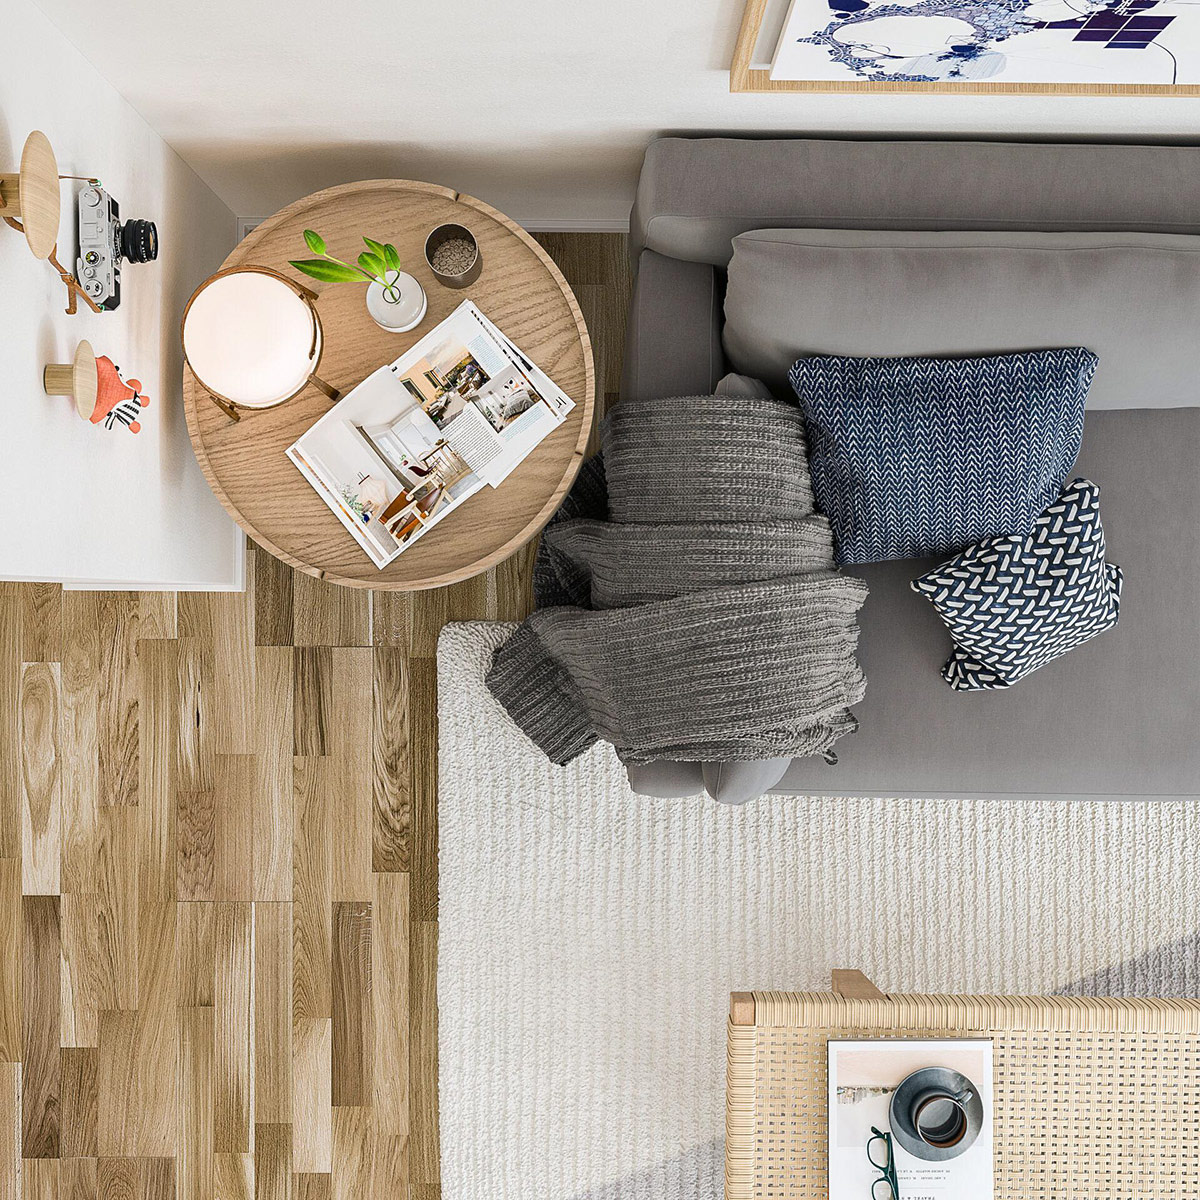 hình ảnh phòng khách căn hộ nhìn từ trên cao với sofa xám, bàn trà tròn, gối tựa màu trung tính